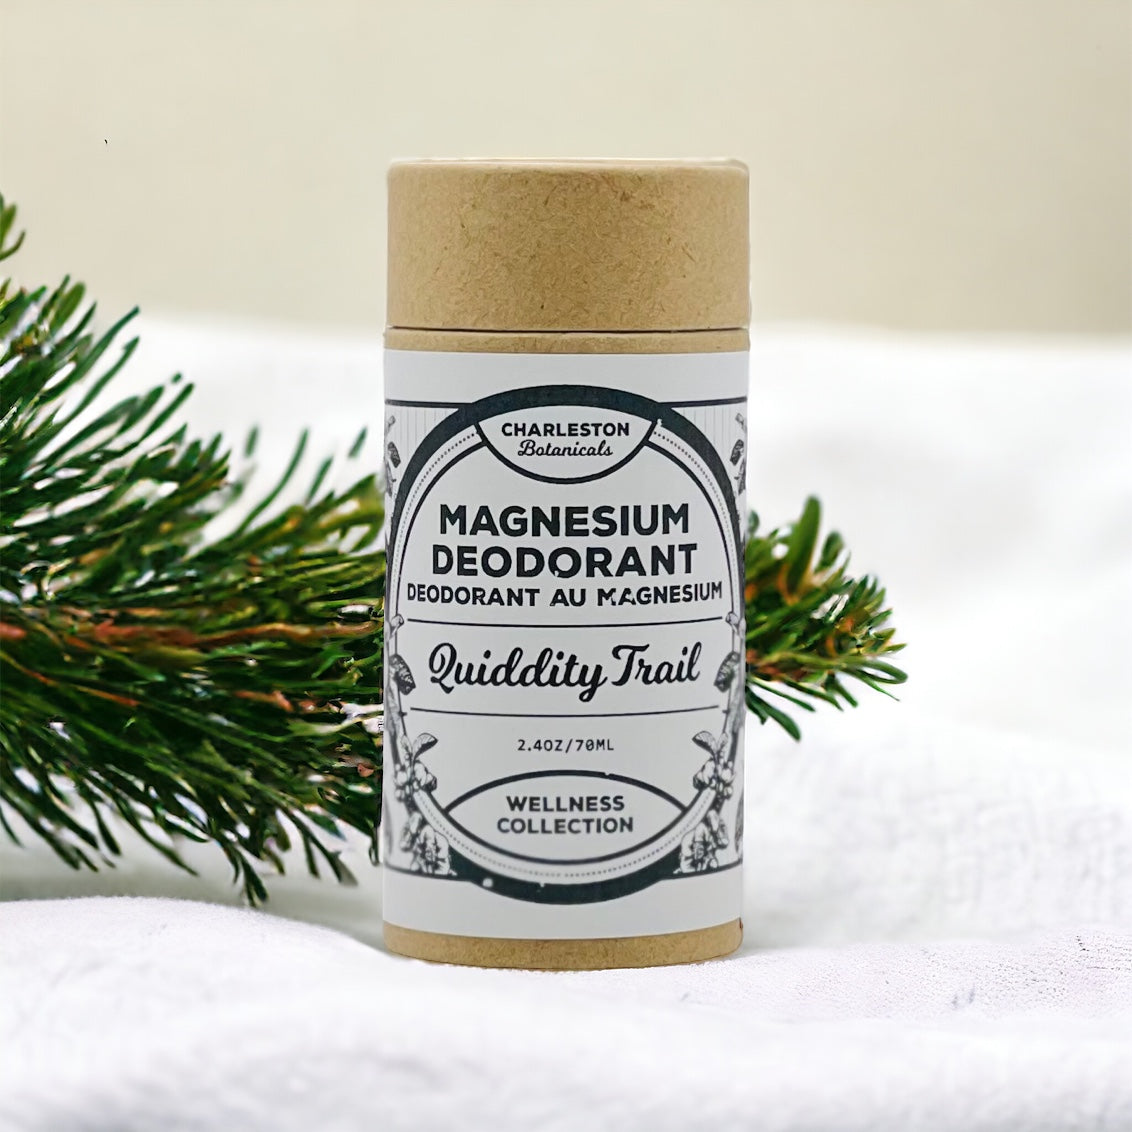 Quiddity Trail Magnesium Deodorant